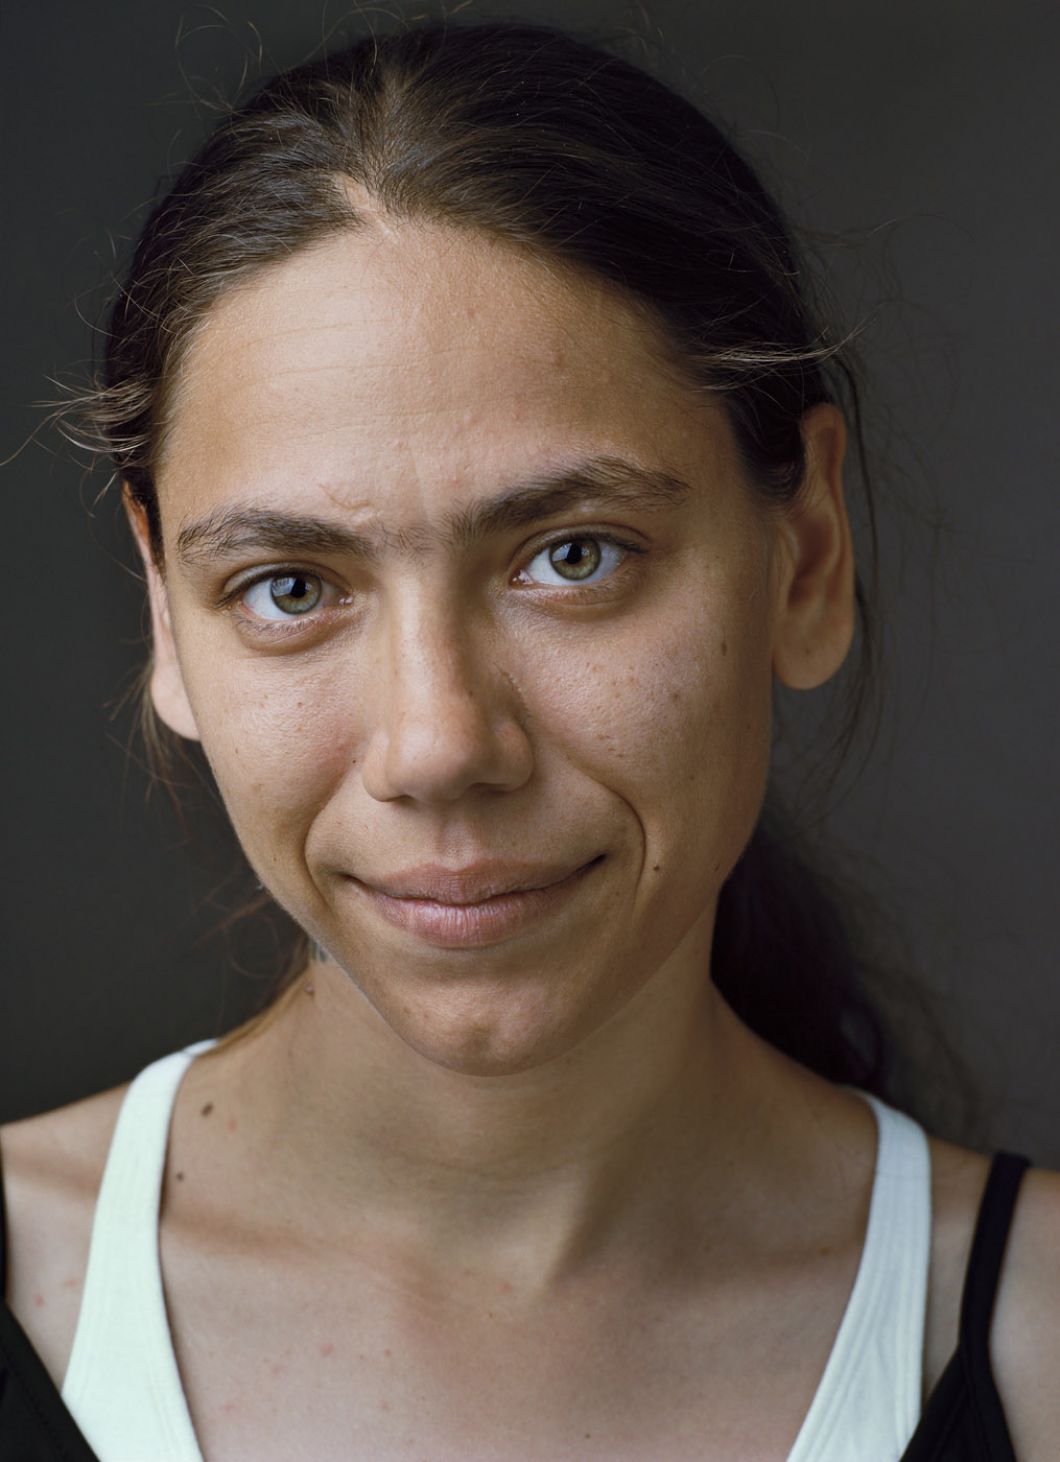 Magnifiques portraits de sans-abris